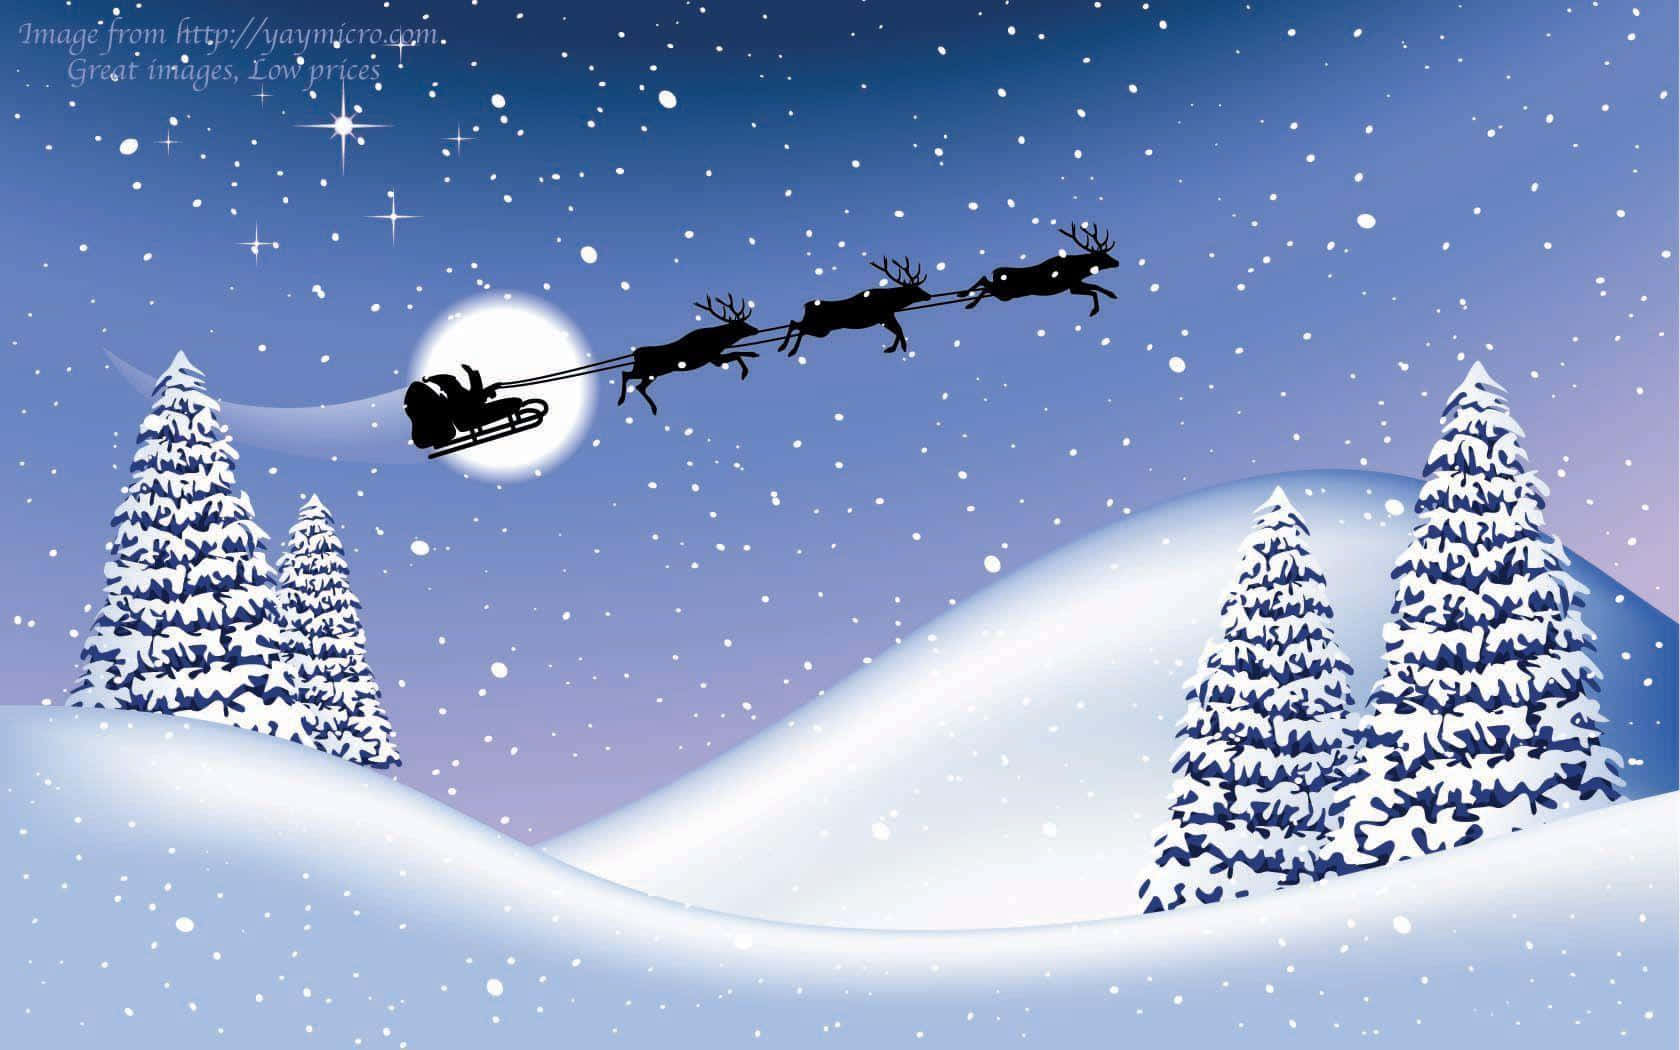 Julemandenflyver Over Et Sneklædt Landskab.